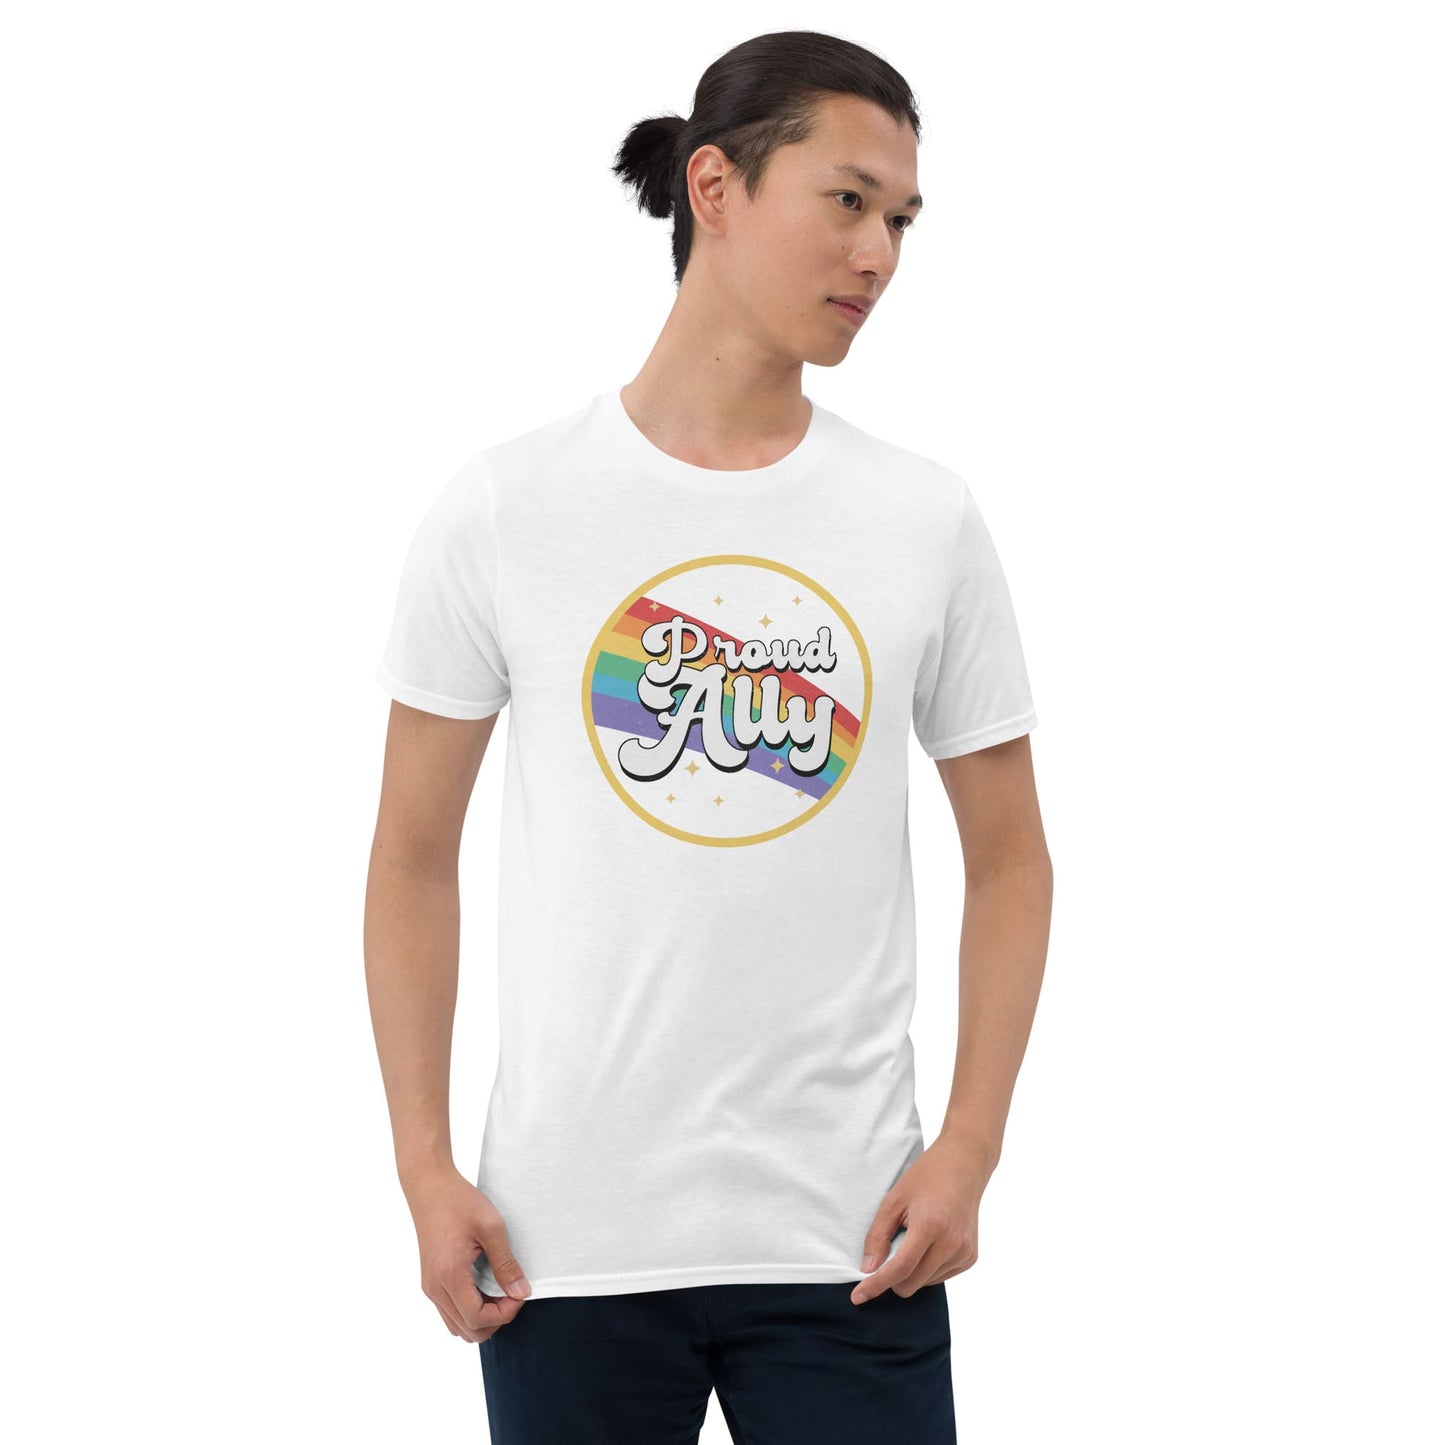 LGBT ally shirt, model 3